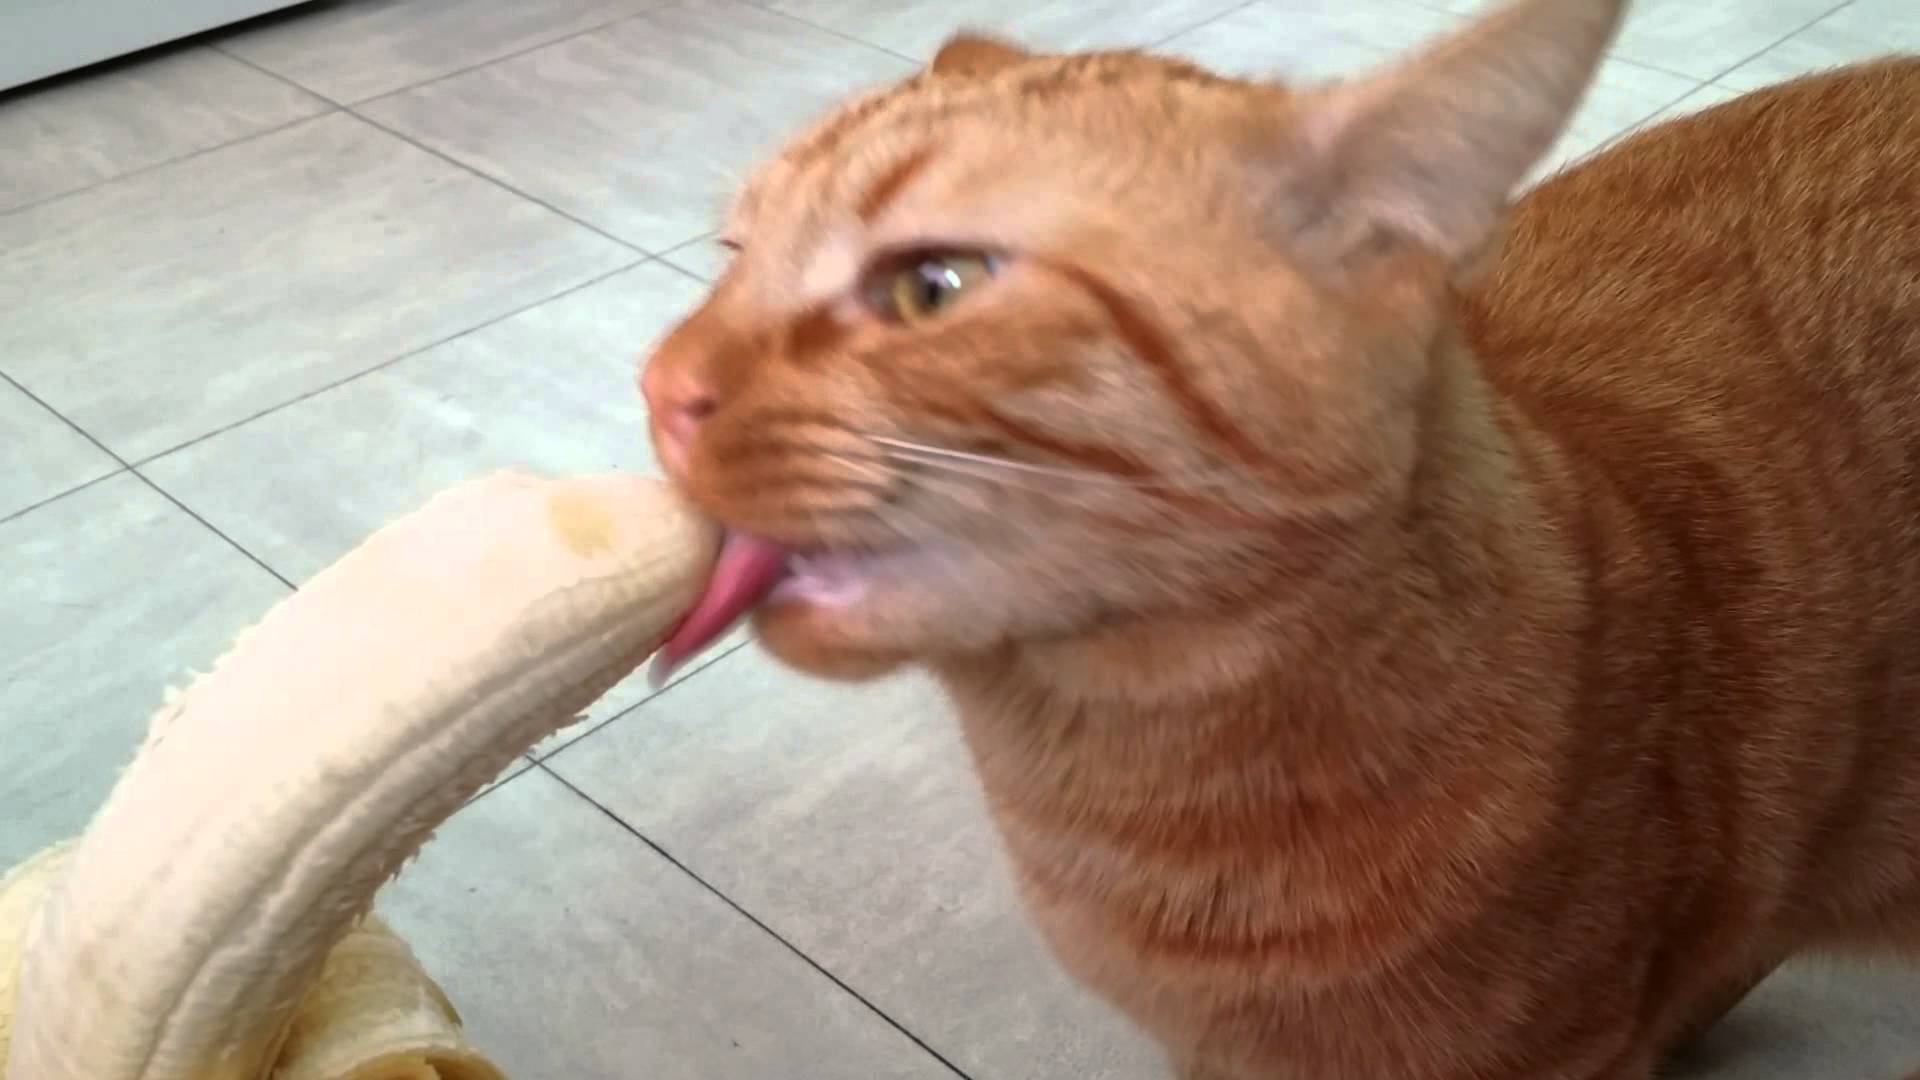 Mao the Cat eating a banana - YouTube